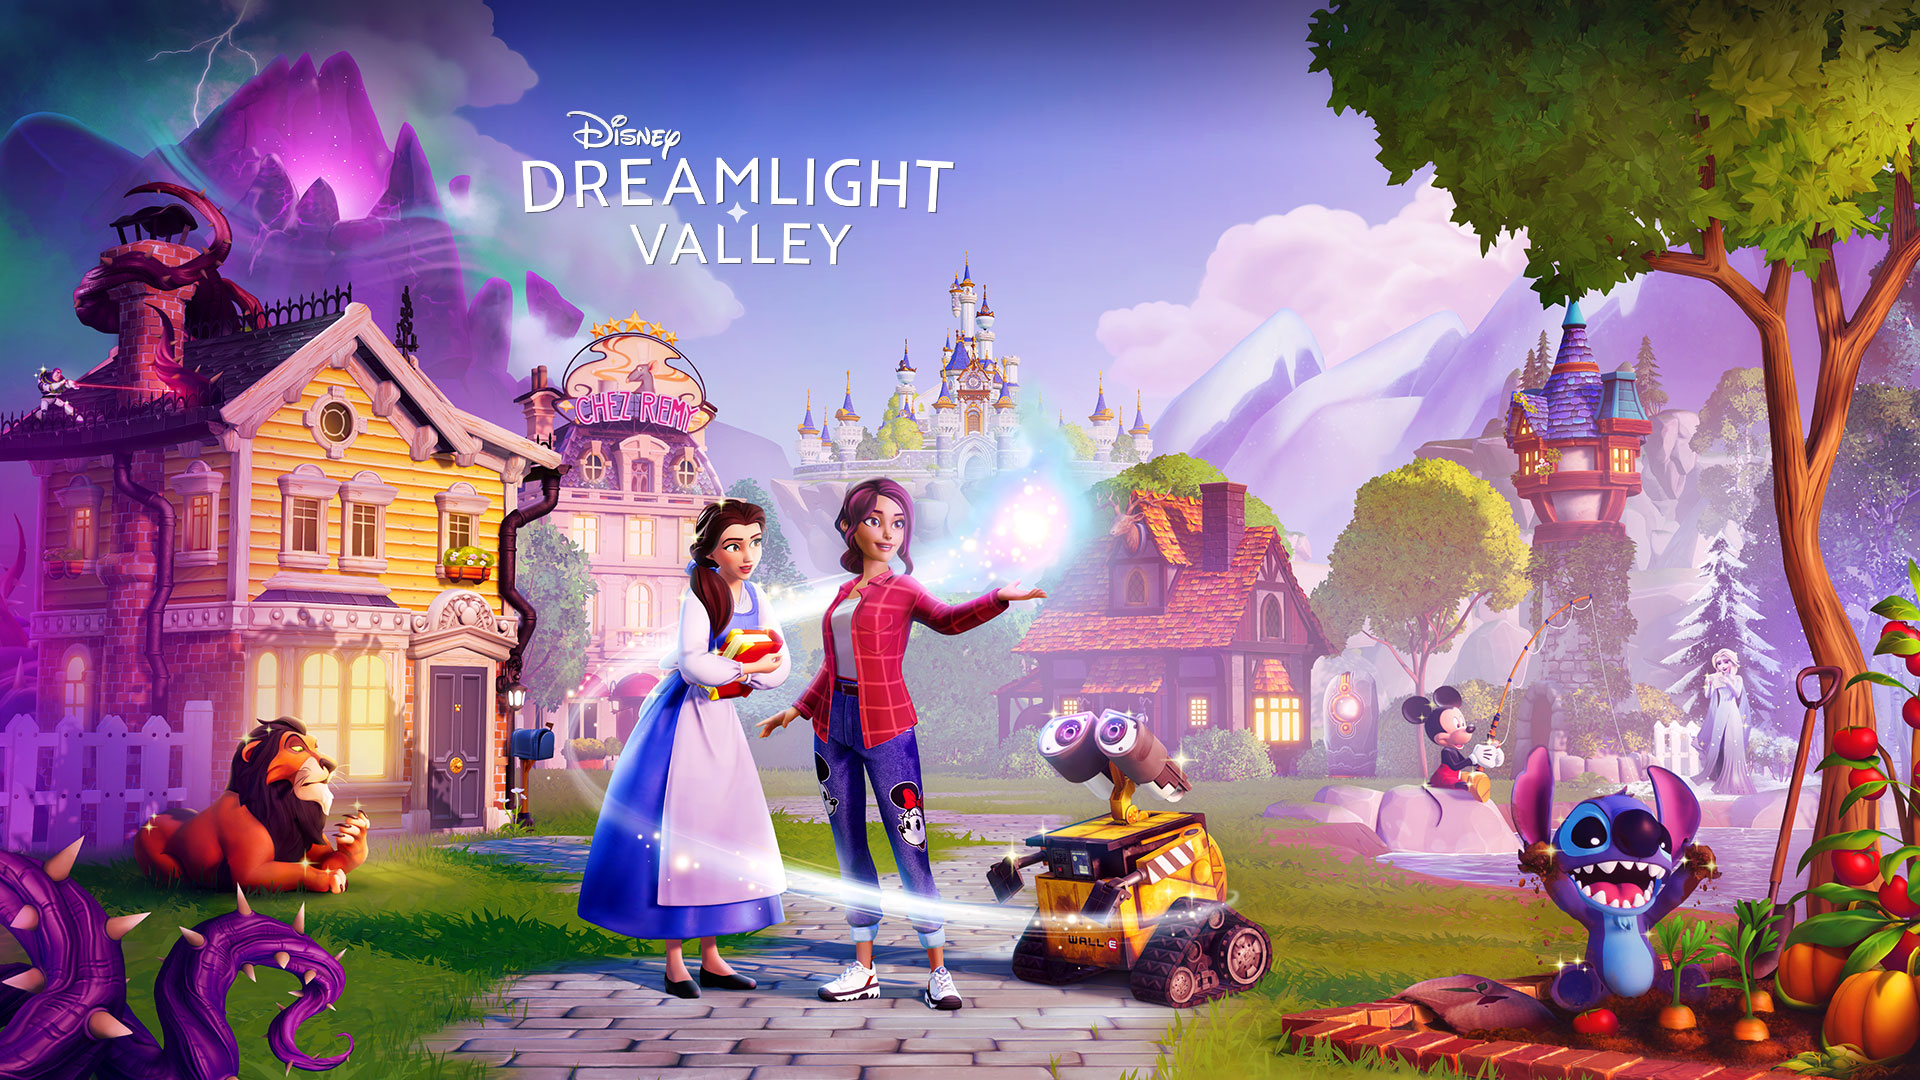 Disney Dreamlight Valley, Disney-karakterer såsom Belle og Wall-E samles rundt om en spiller i en hyggelig by. 